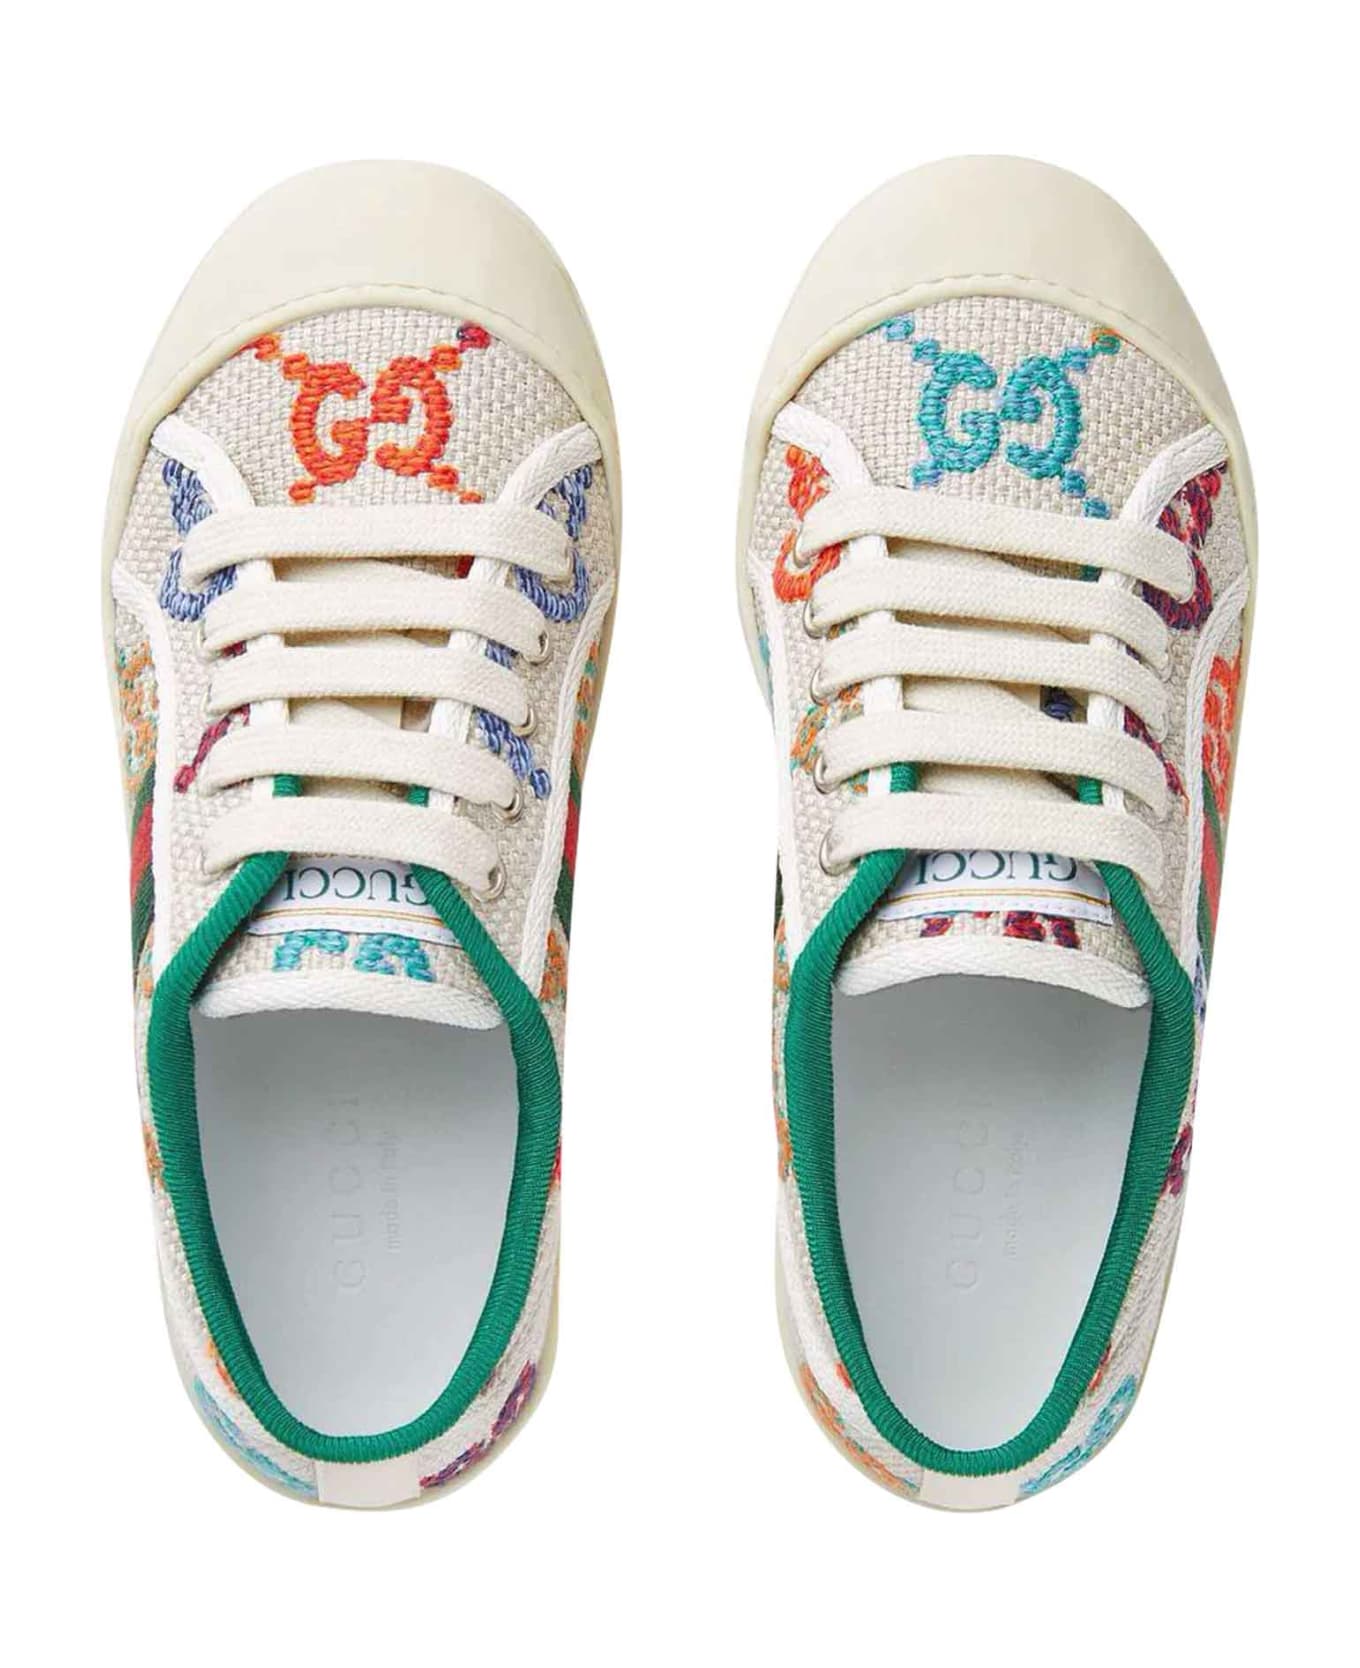 Gucci Multicolor Sneakers - Multicolor